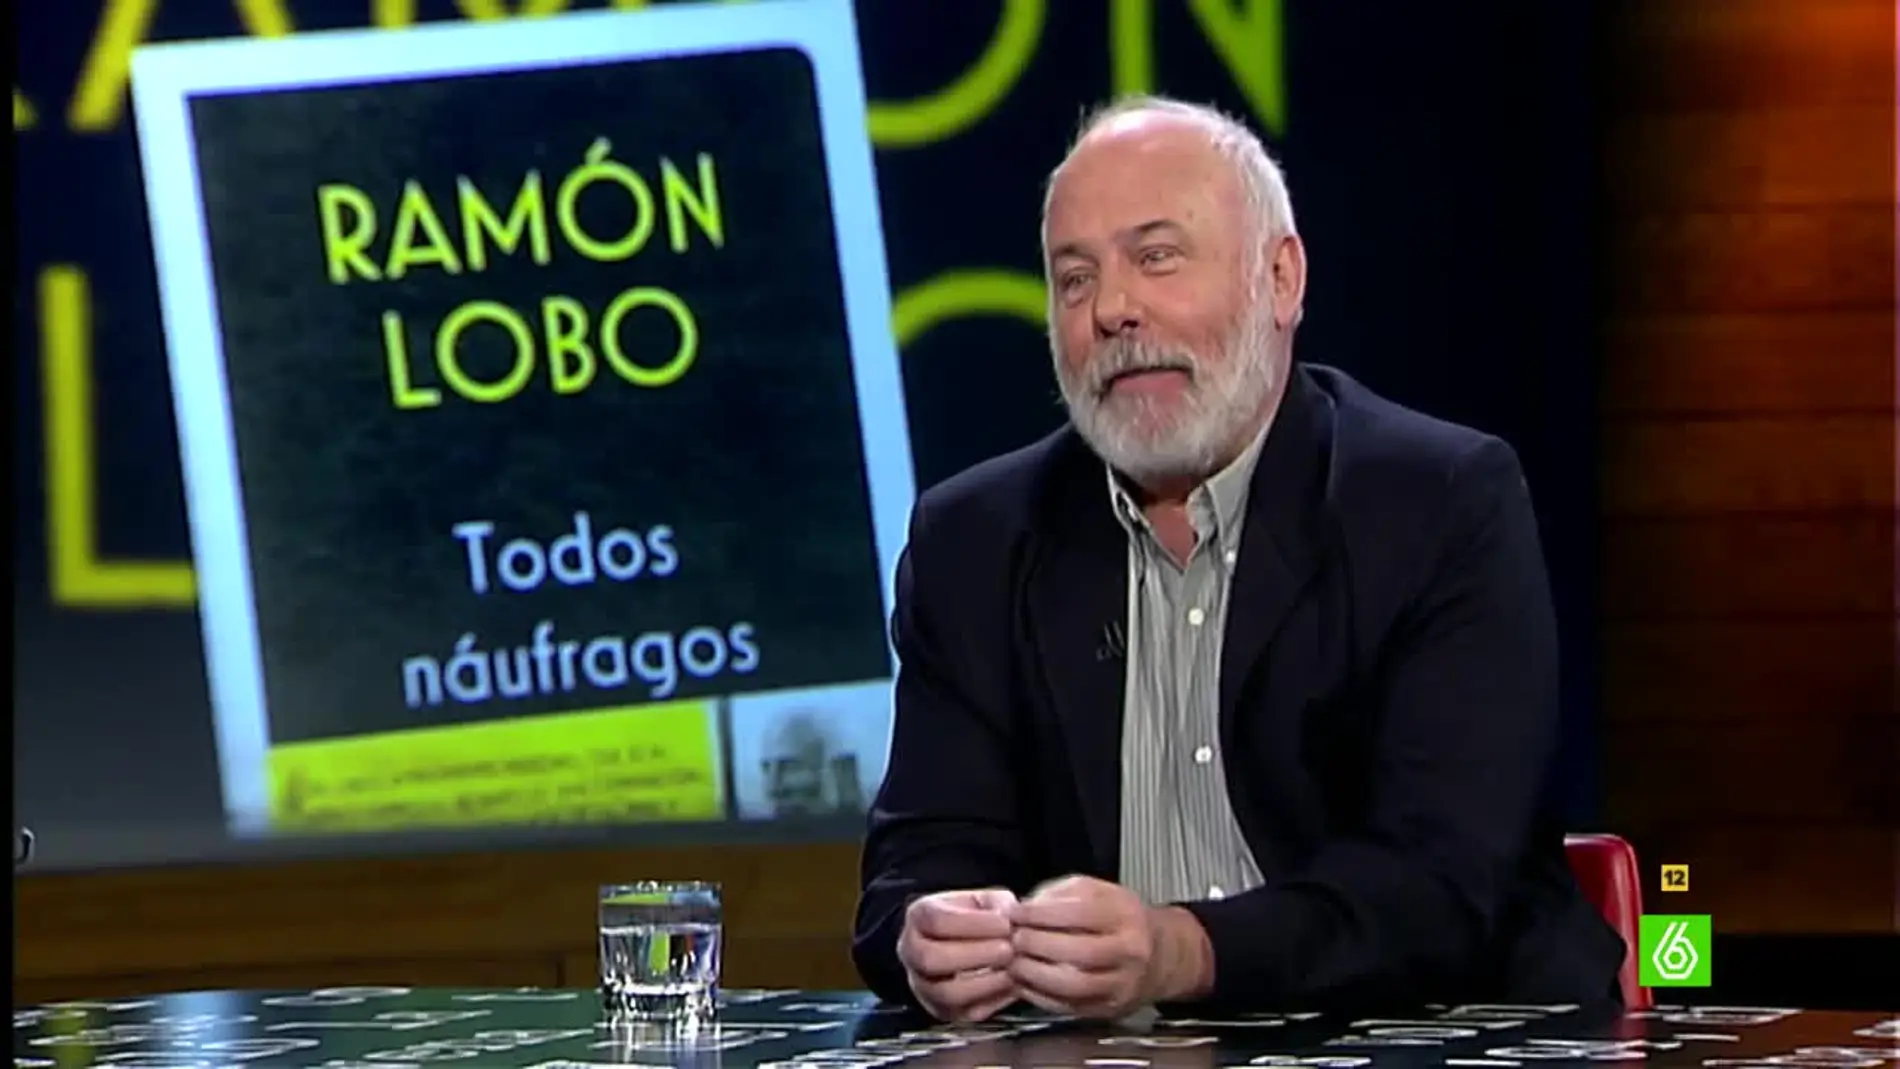 Ramón Cobo invita a buscar una nueva forma de enfrentarse a ISIS